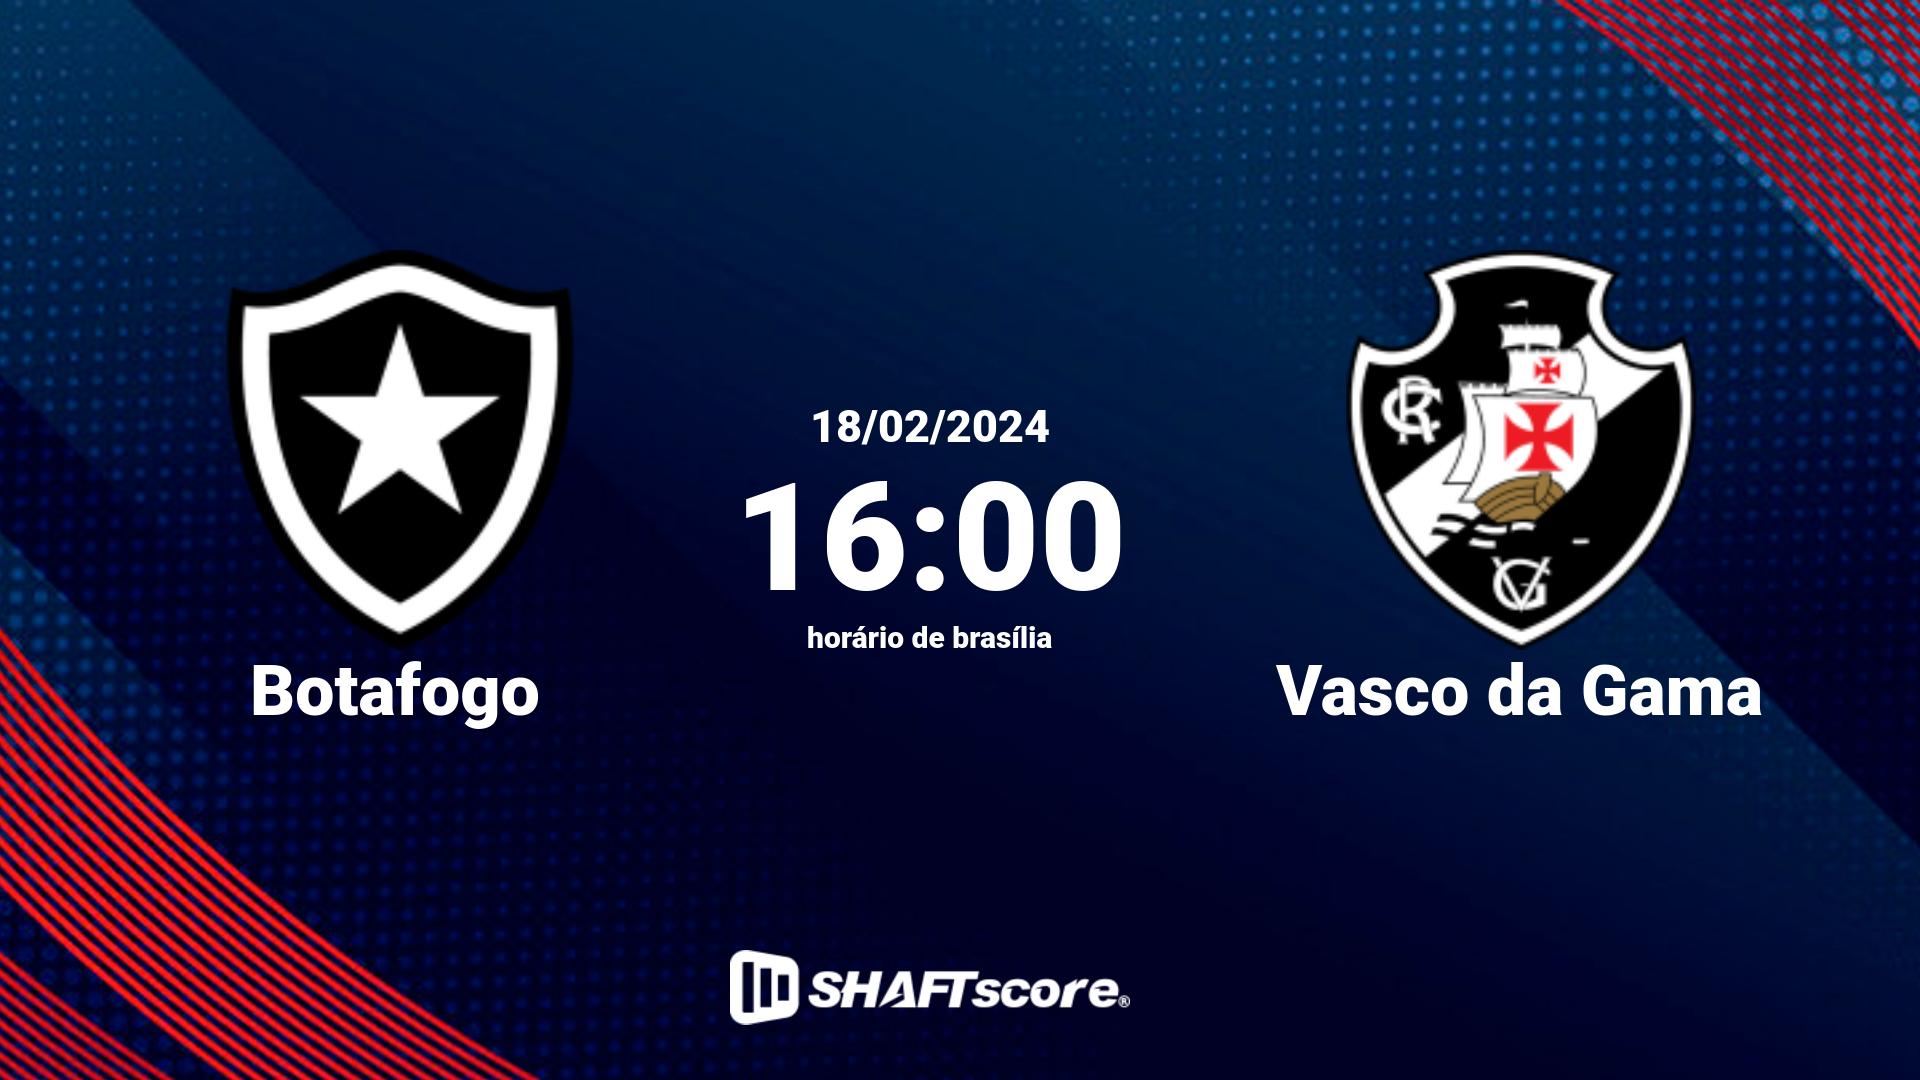 Estatísticas do jogo Botafogo vs Vasco da Gama 18.02 16:00